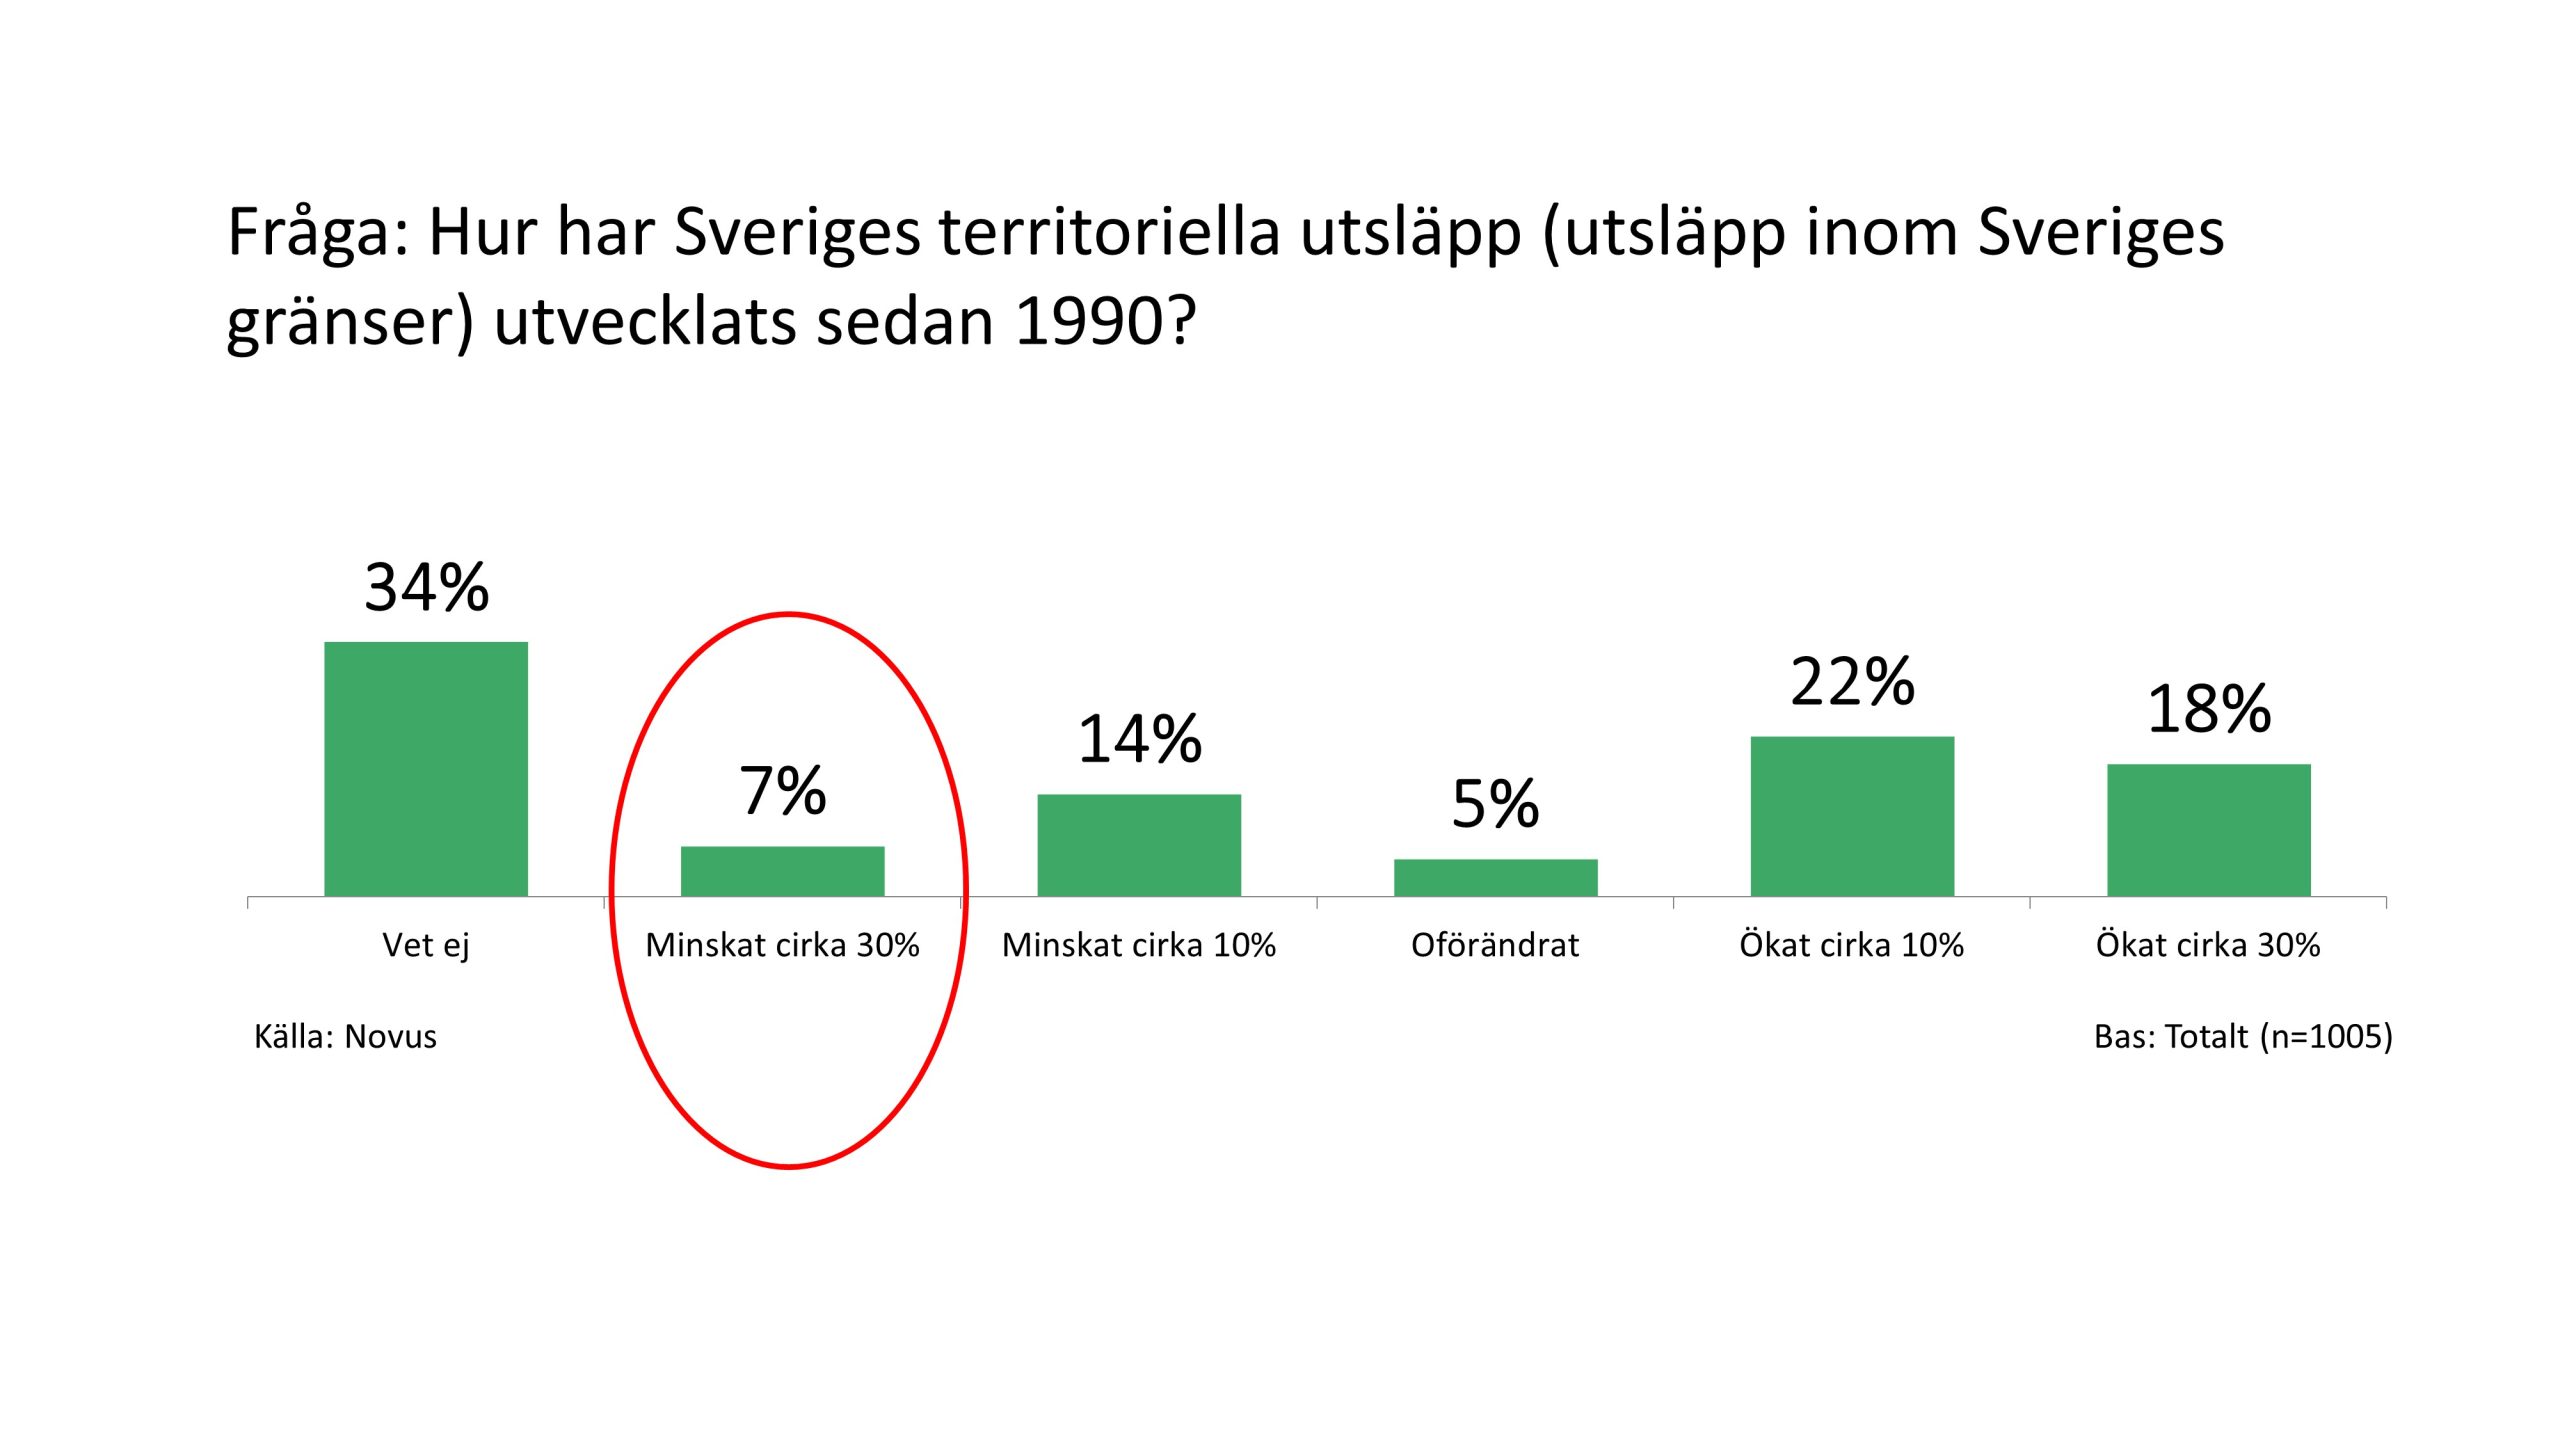 FRÅGA: Hur har Sveriges territoriella utsläpp (utsläpp inom Sveriges gränser) utvecklats sedan 1990?
SVAR:
Ökat med cirka 30%:             18%
Ökat med cirka 10%:             22%
Oförändrat:                             5%
Minskat med cirka 10%:        14%
Minskat med cirka 30%:          7% 
Vet ej:                                  34%
